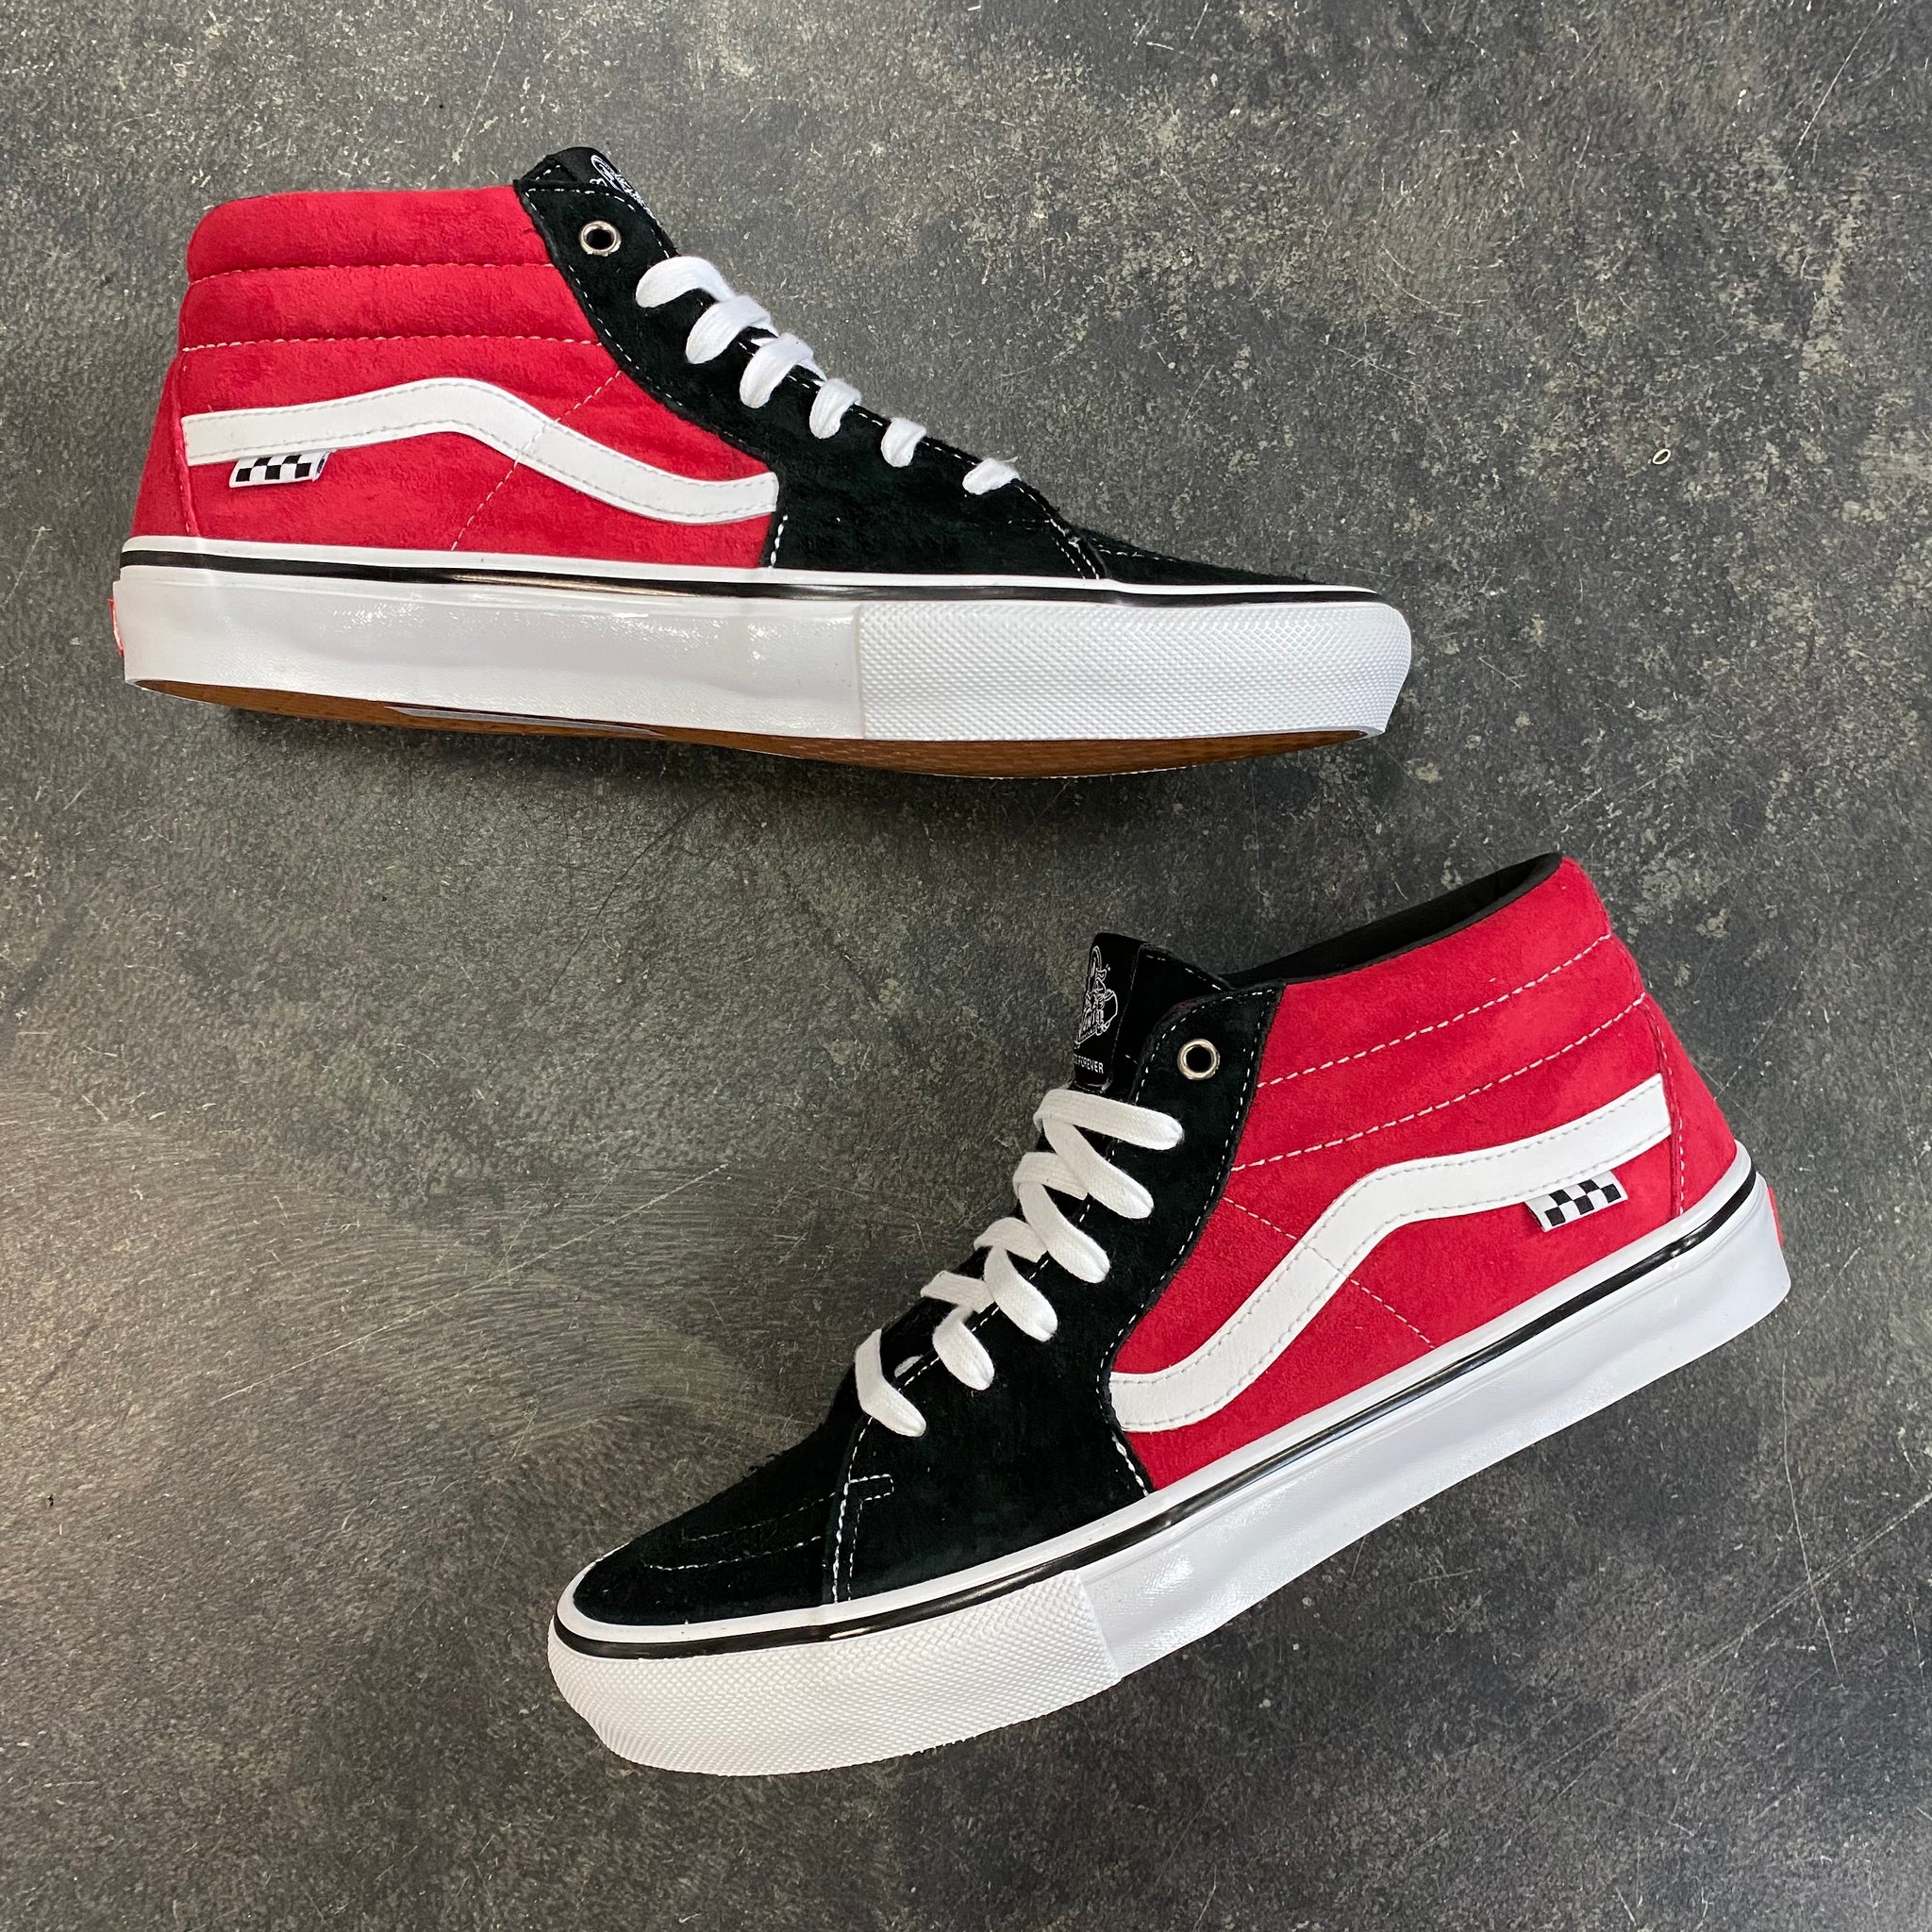 Grosso Black/Red – 561 Skate